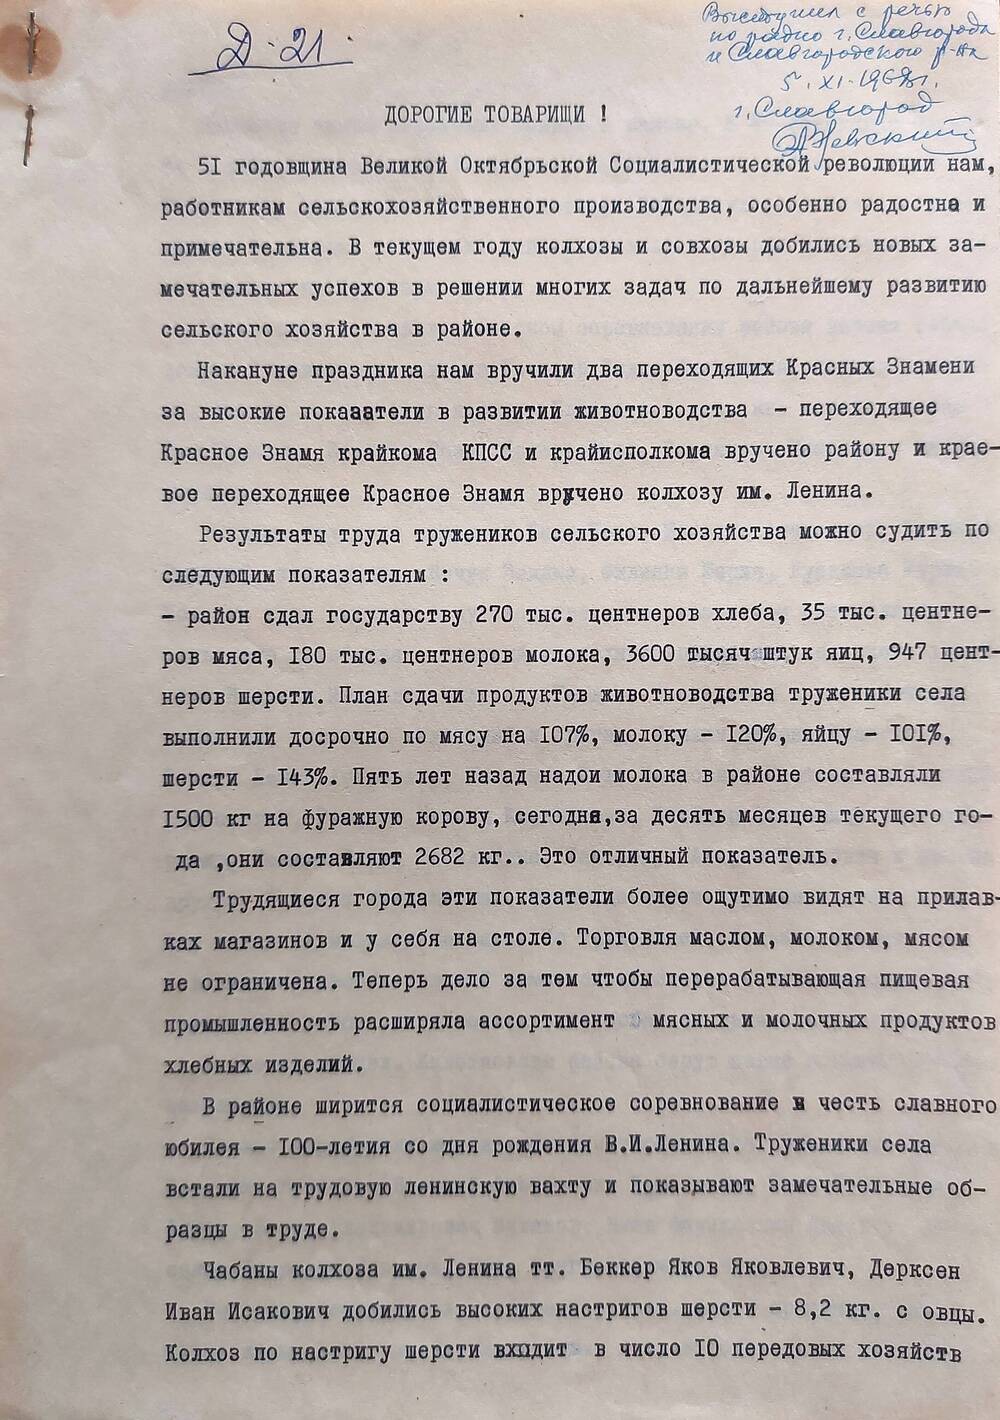 Доклад, посвященный 51-й годовщине Октябрьской революции Невского Александра Николаевича - секретаря Алтайского крайкома КПСС.